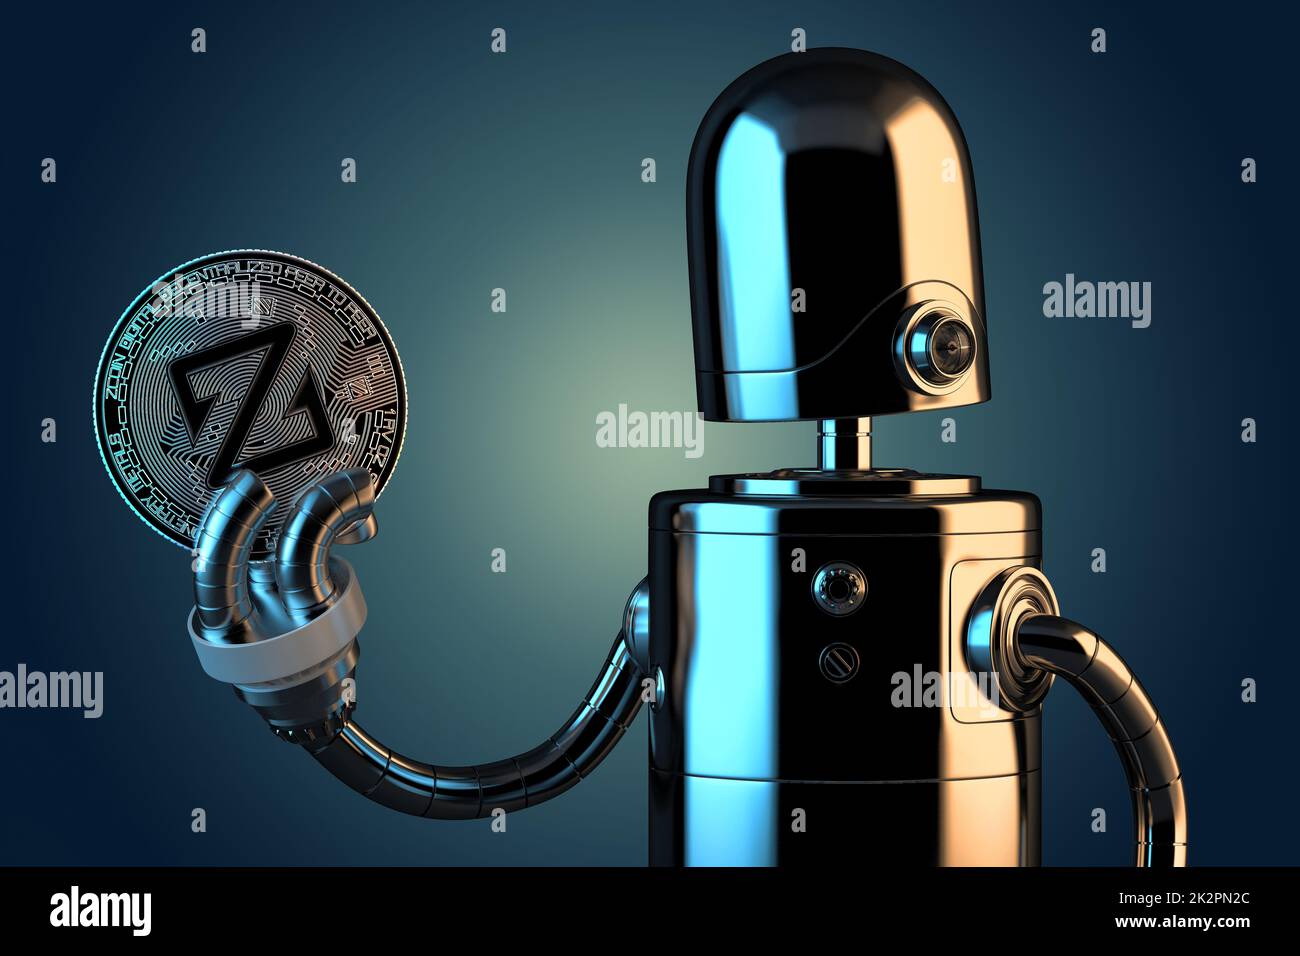 Robot tenant Zcoin.Concept de technologie.3D illustration Banque D'Images